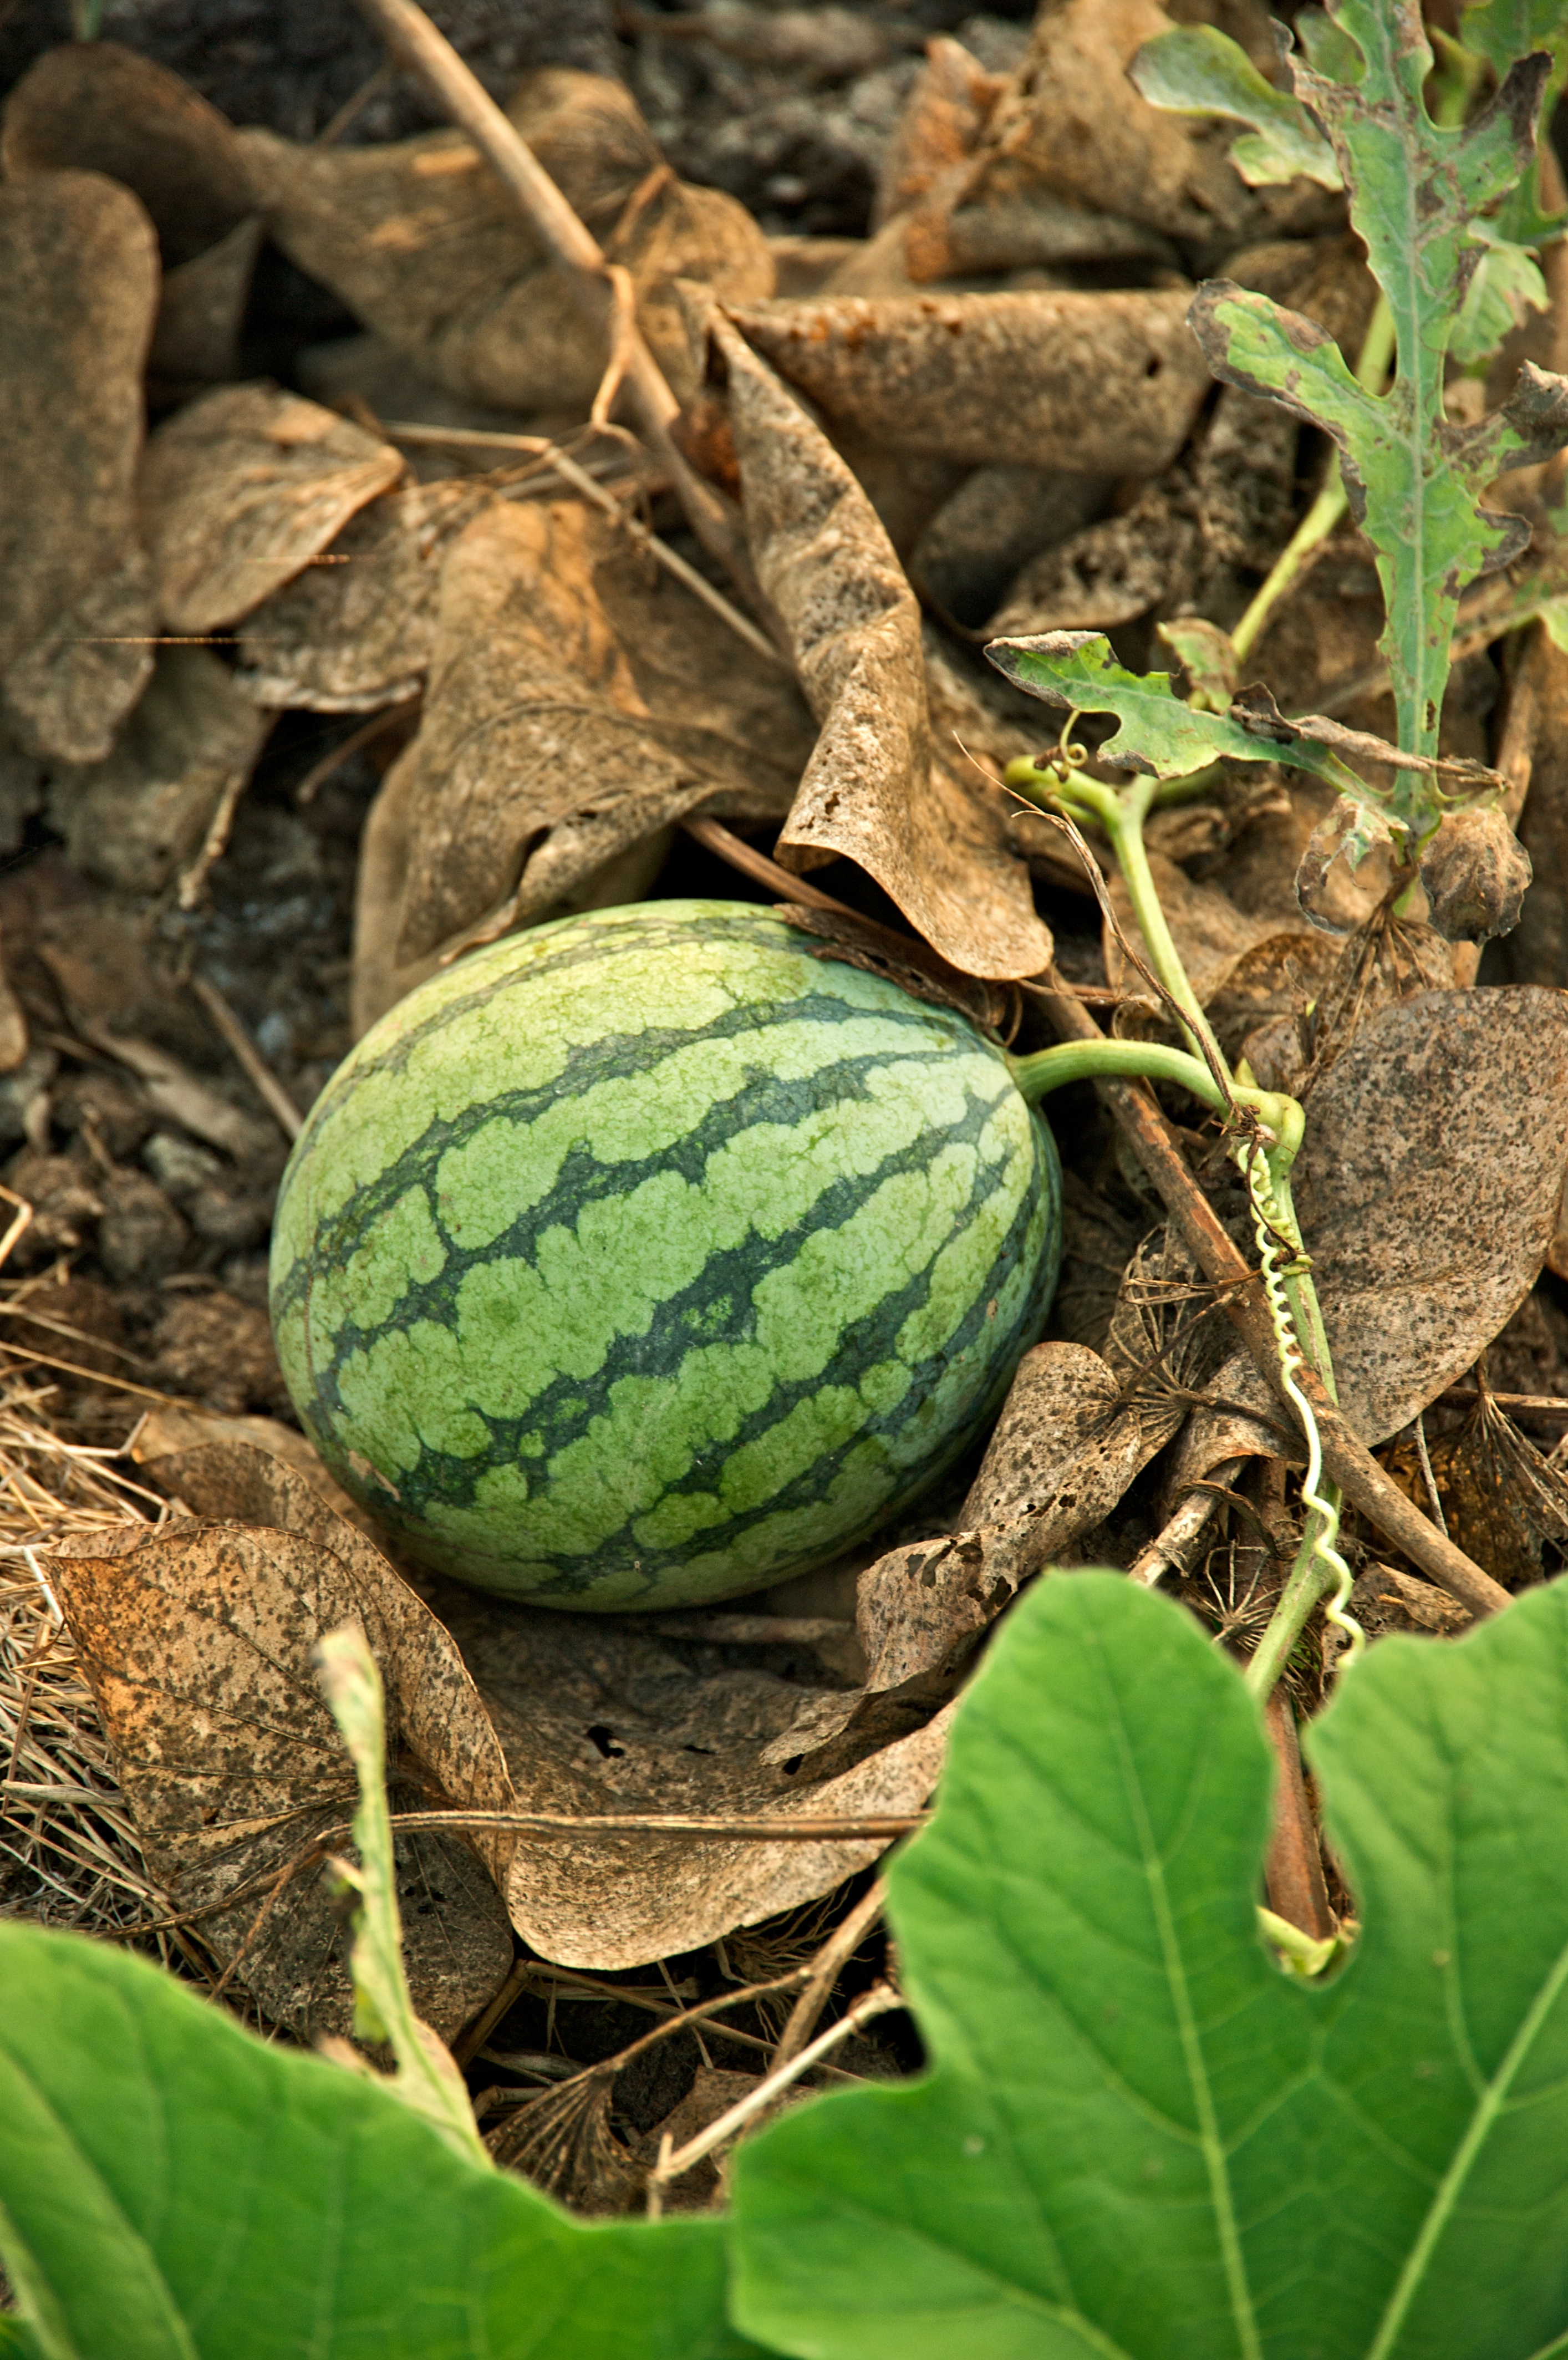 عکس منحصر به فرد و دیدنی از هندوانه طبیعی در حال رشد 